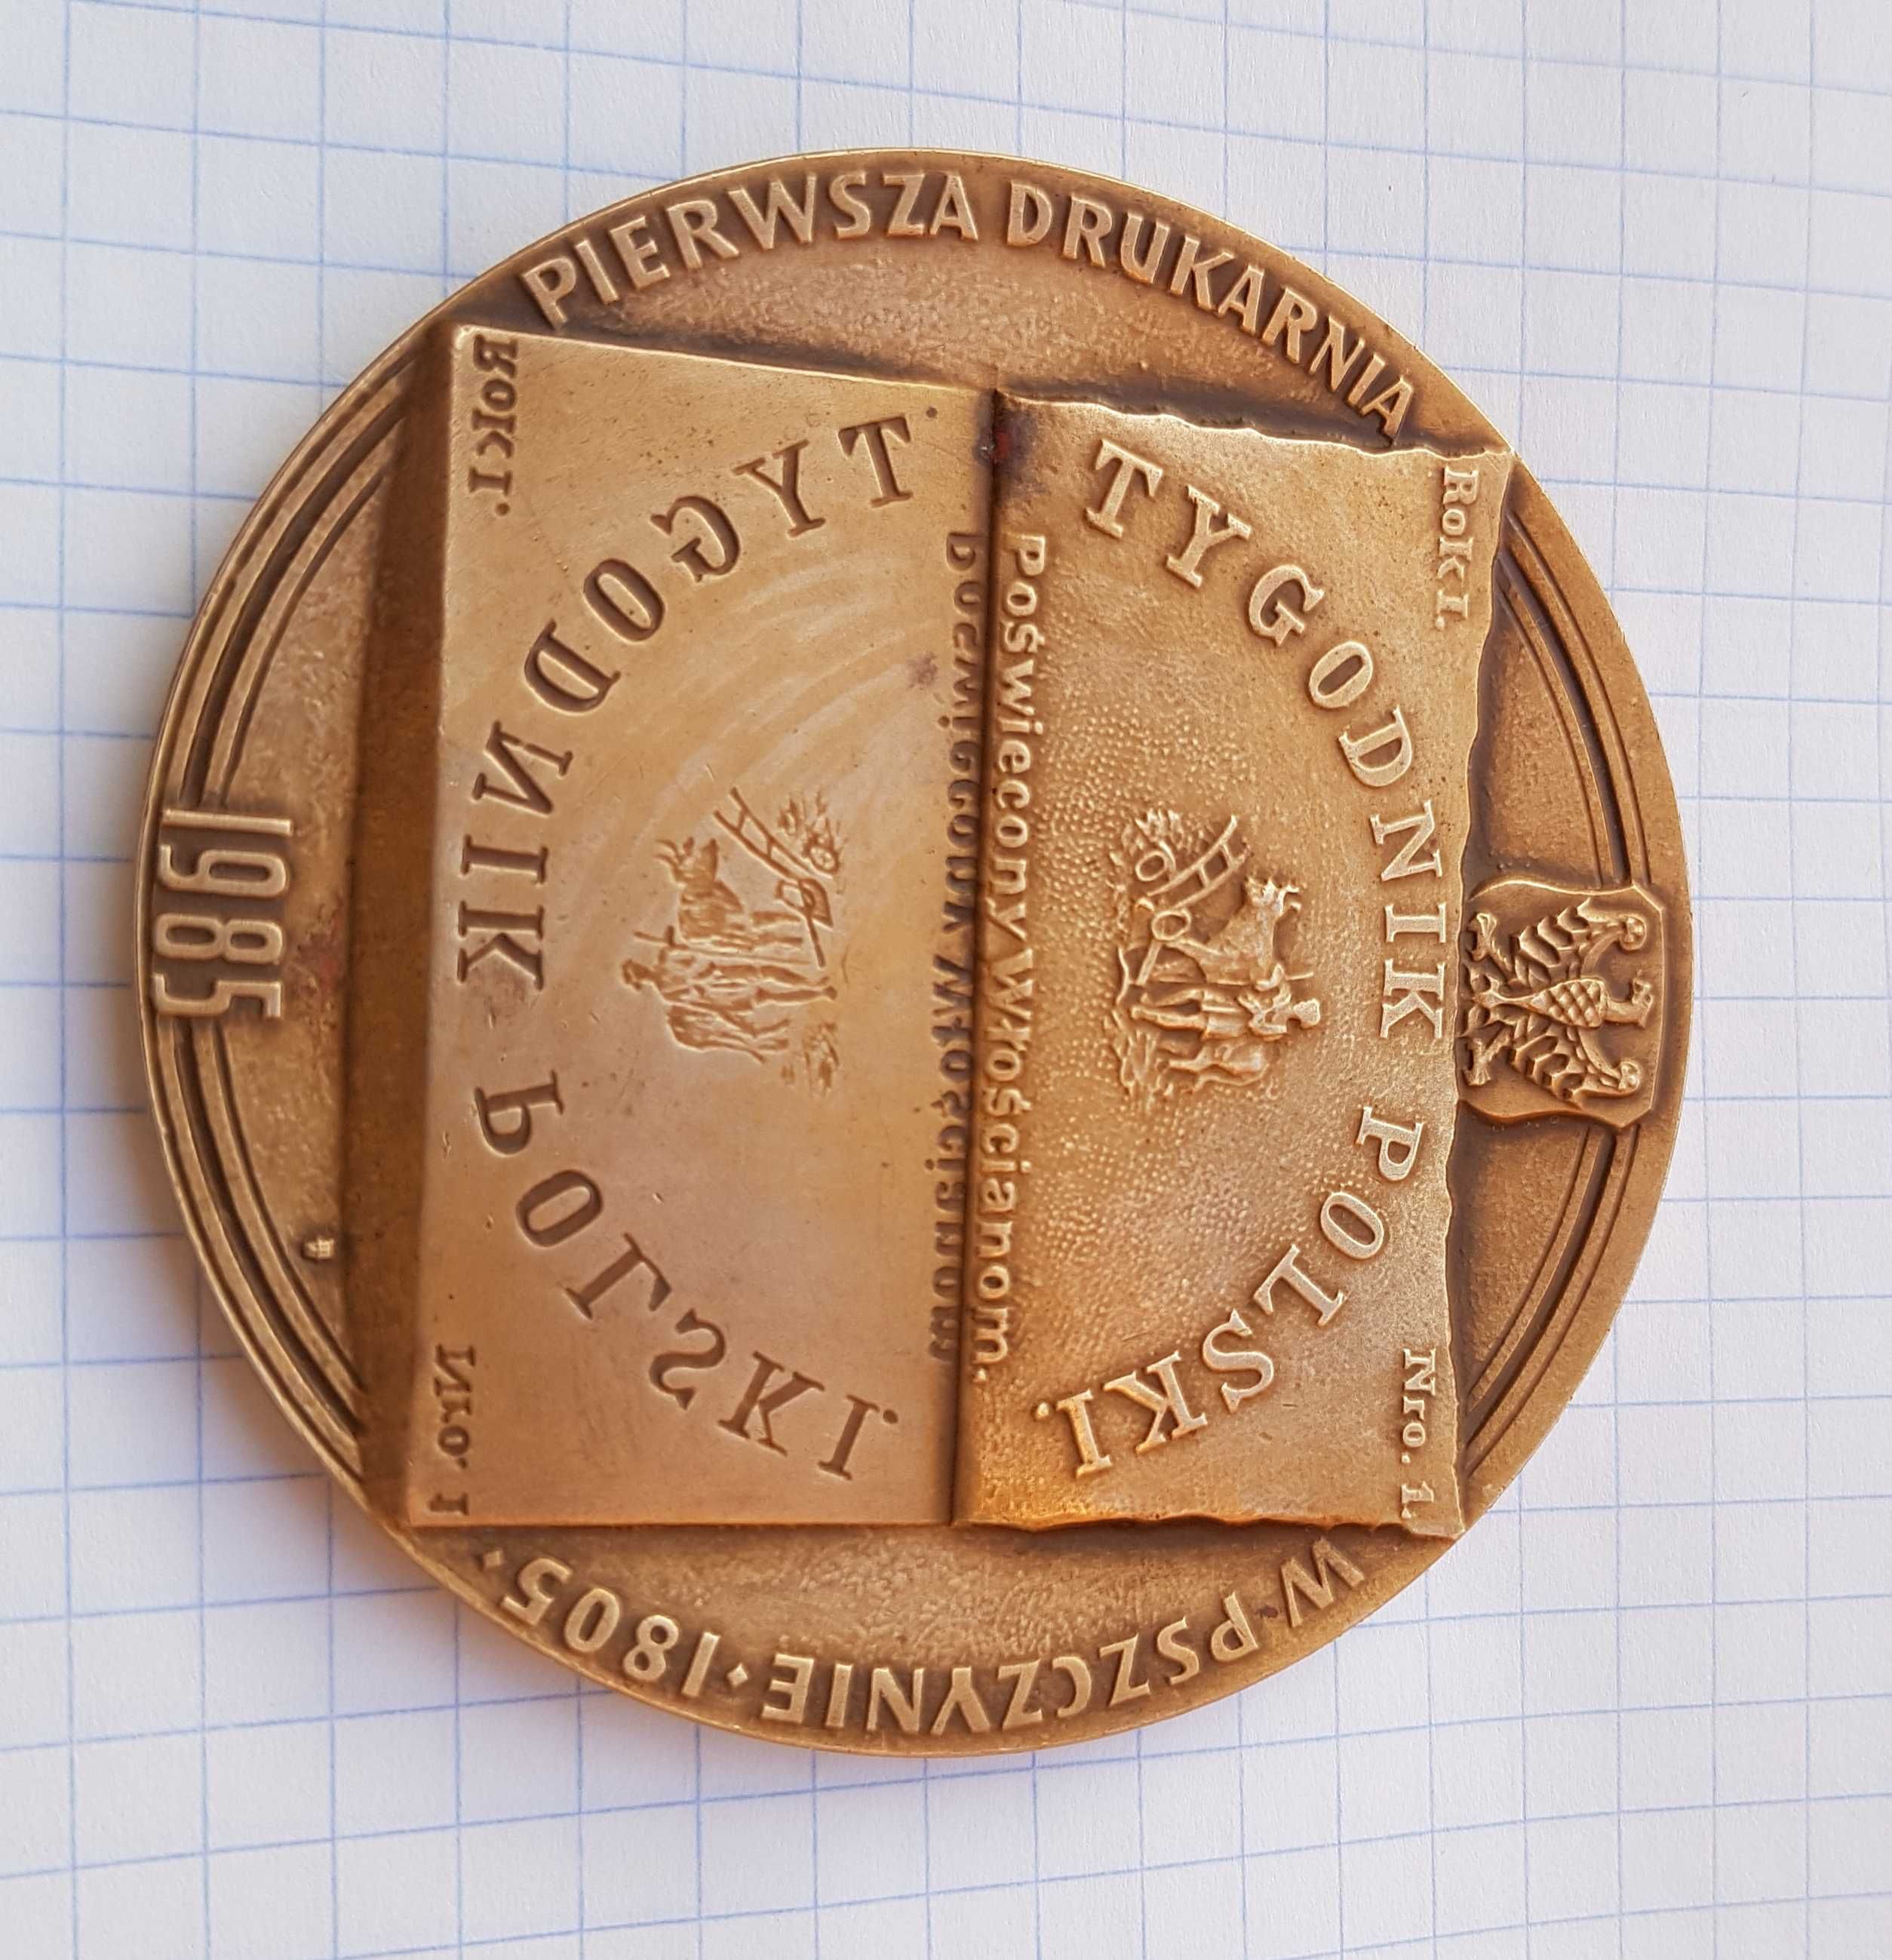 Medal Karol Miarka Pszczyna Tygodnik Polski 1985